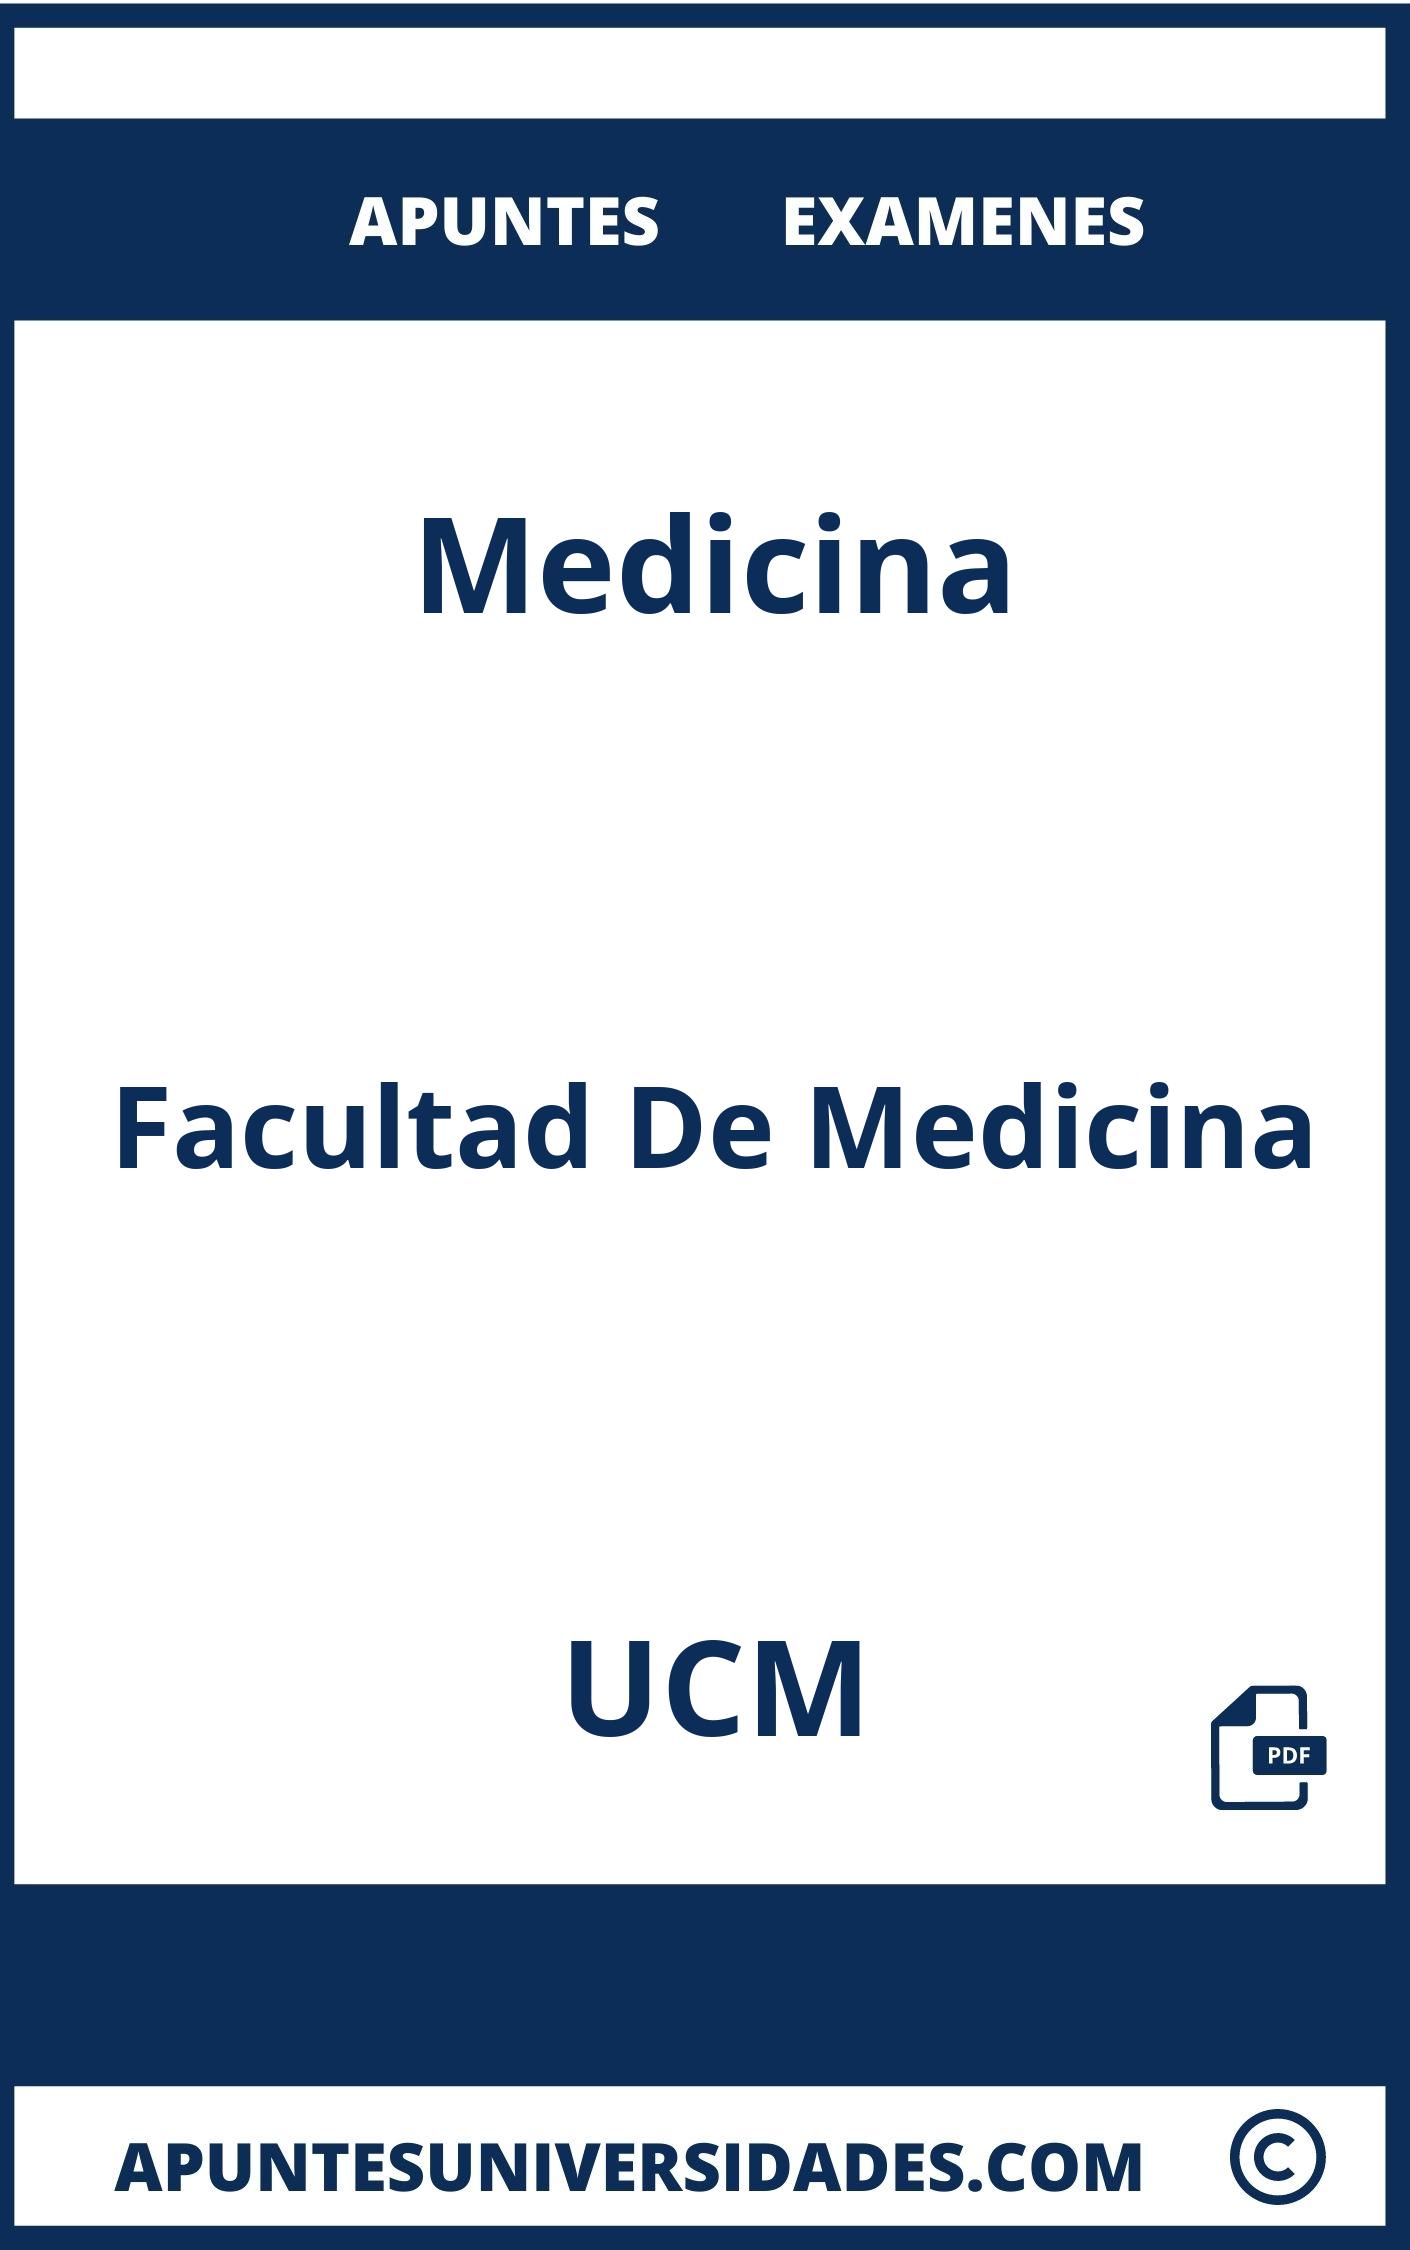 Apuntes y Examenes Medicina UCM